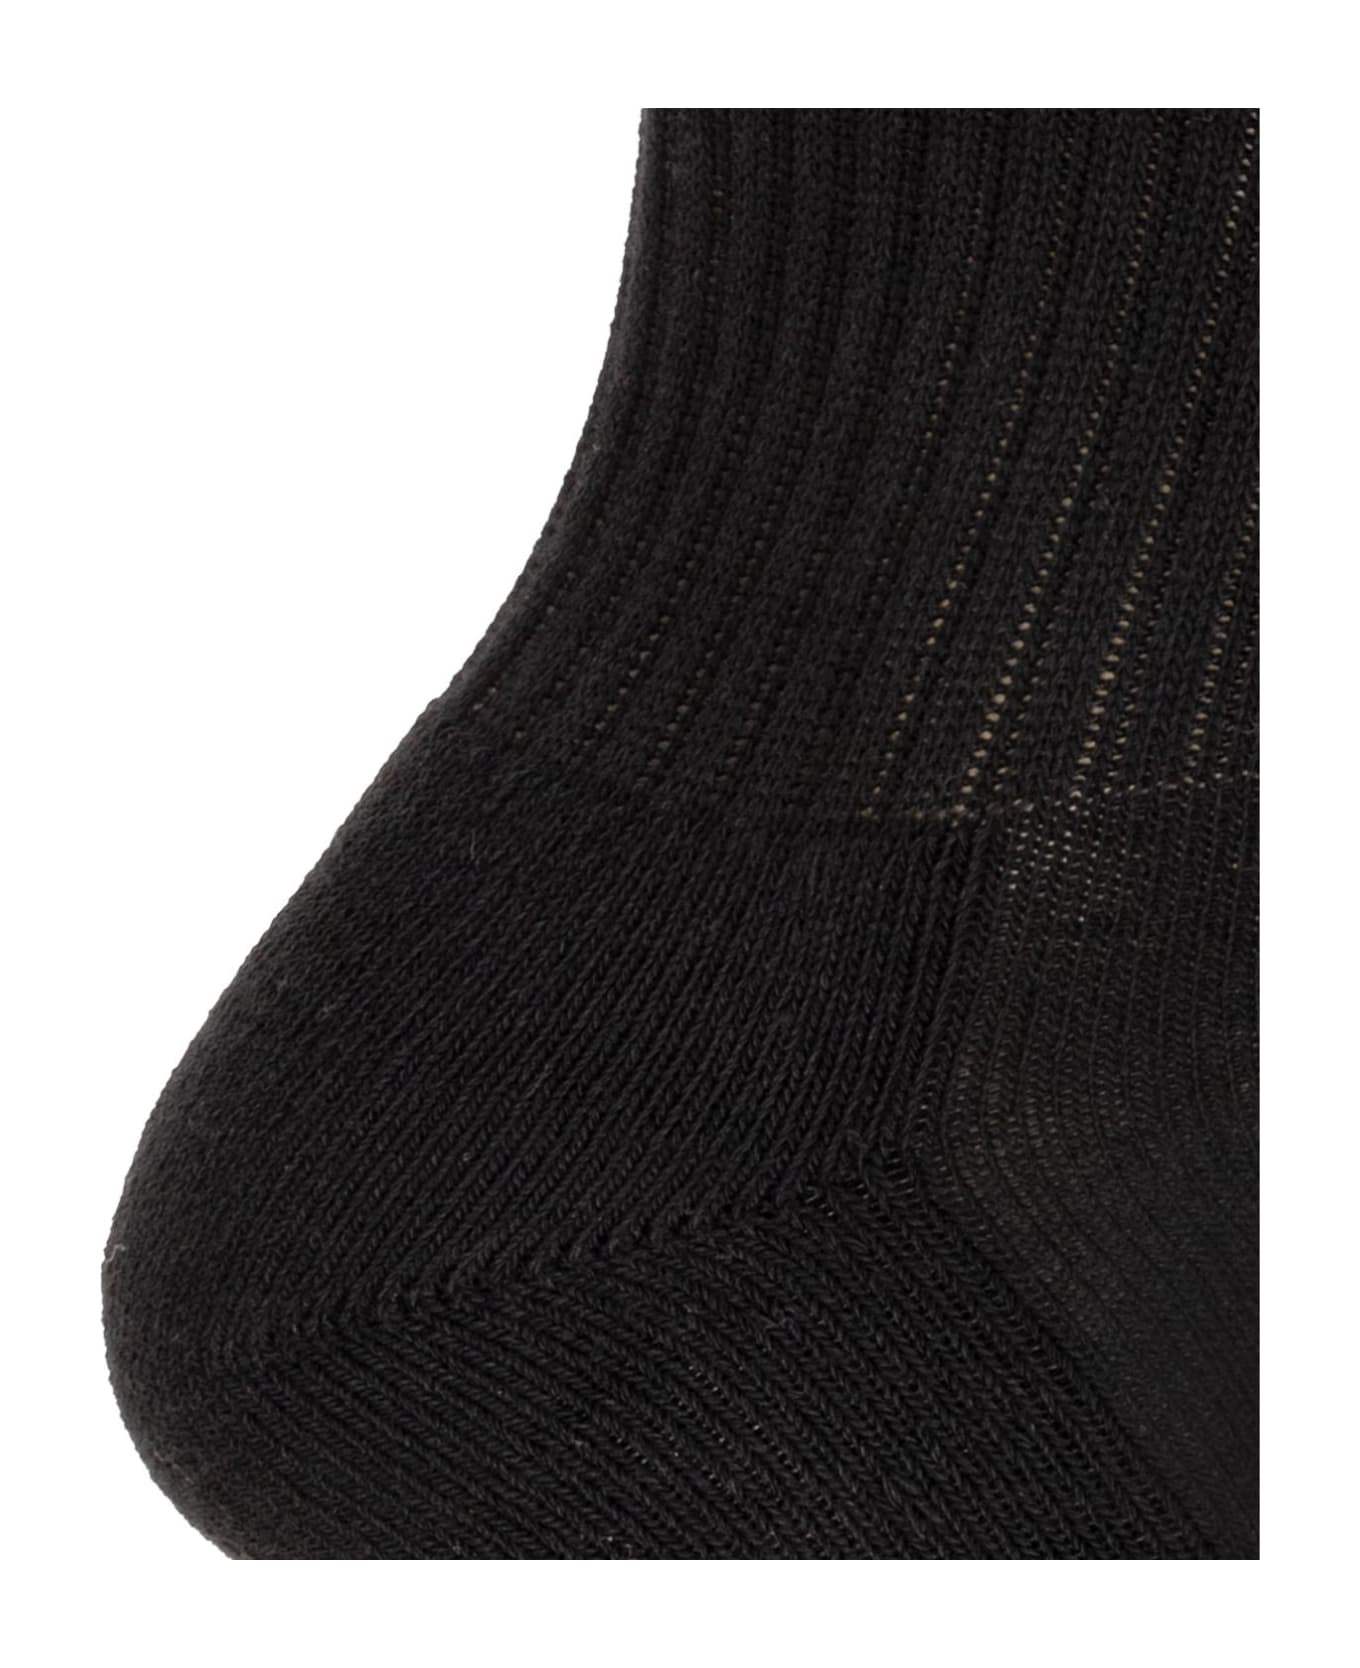 Rhude Socks With Logo - Black 靴下